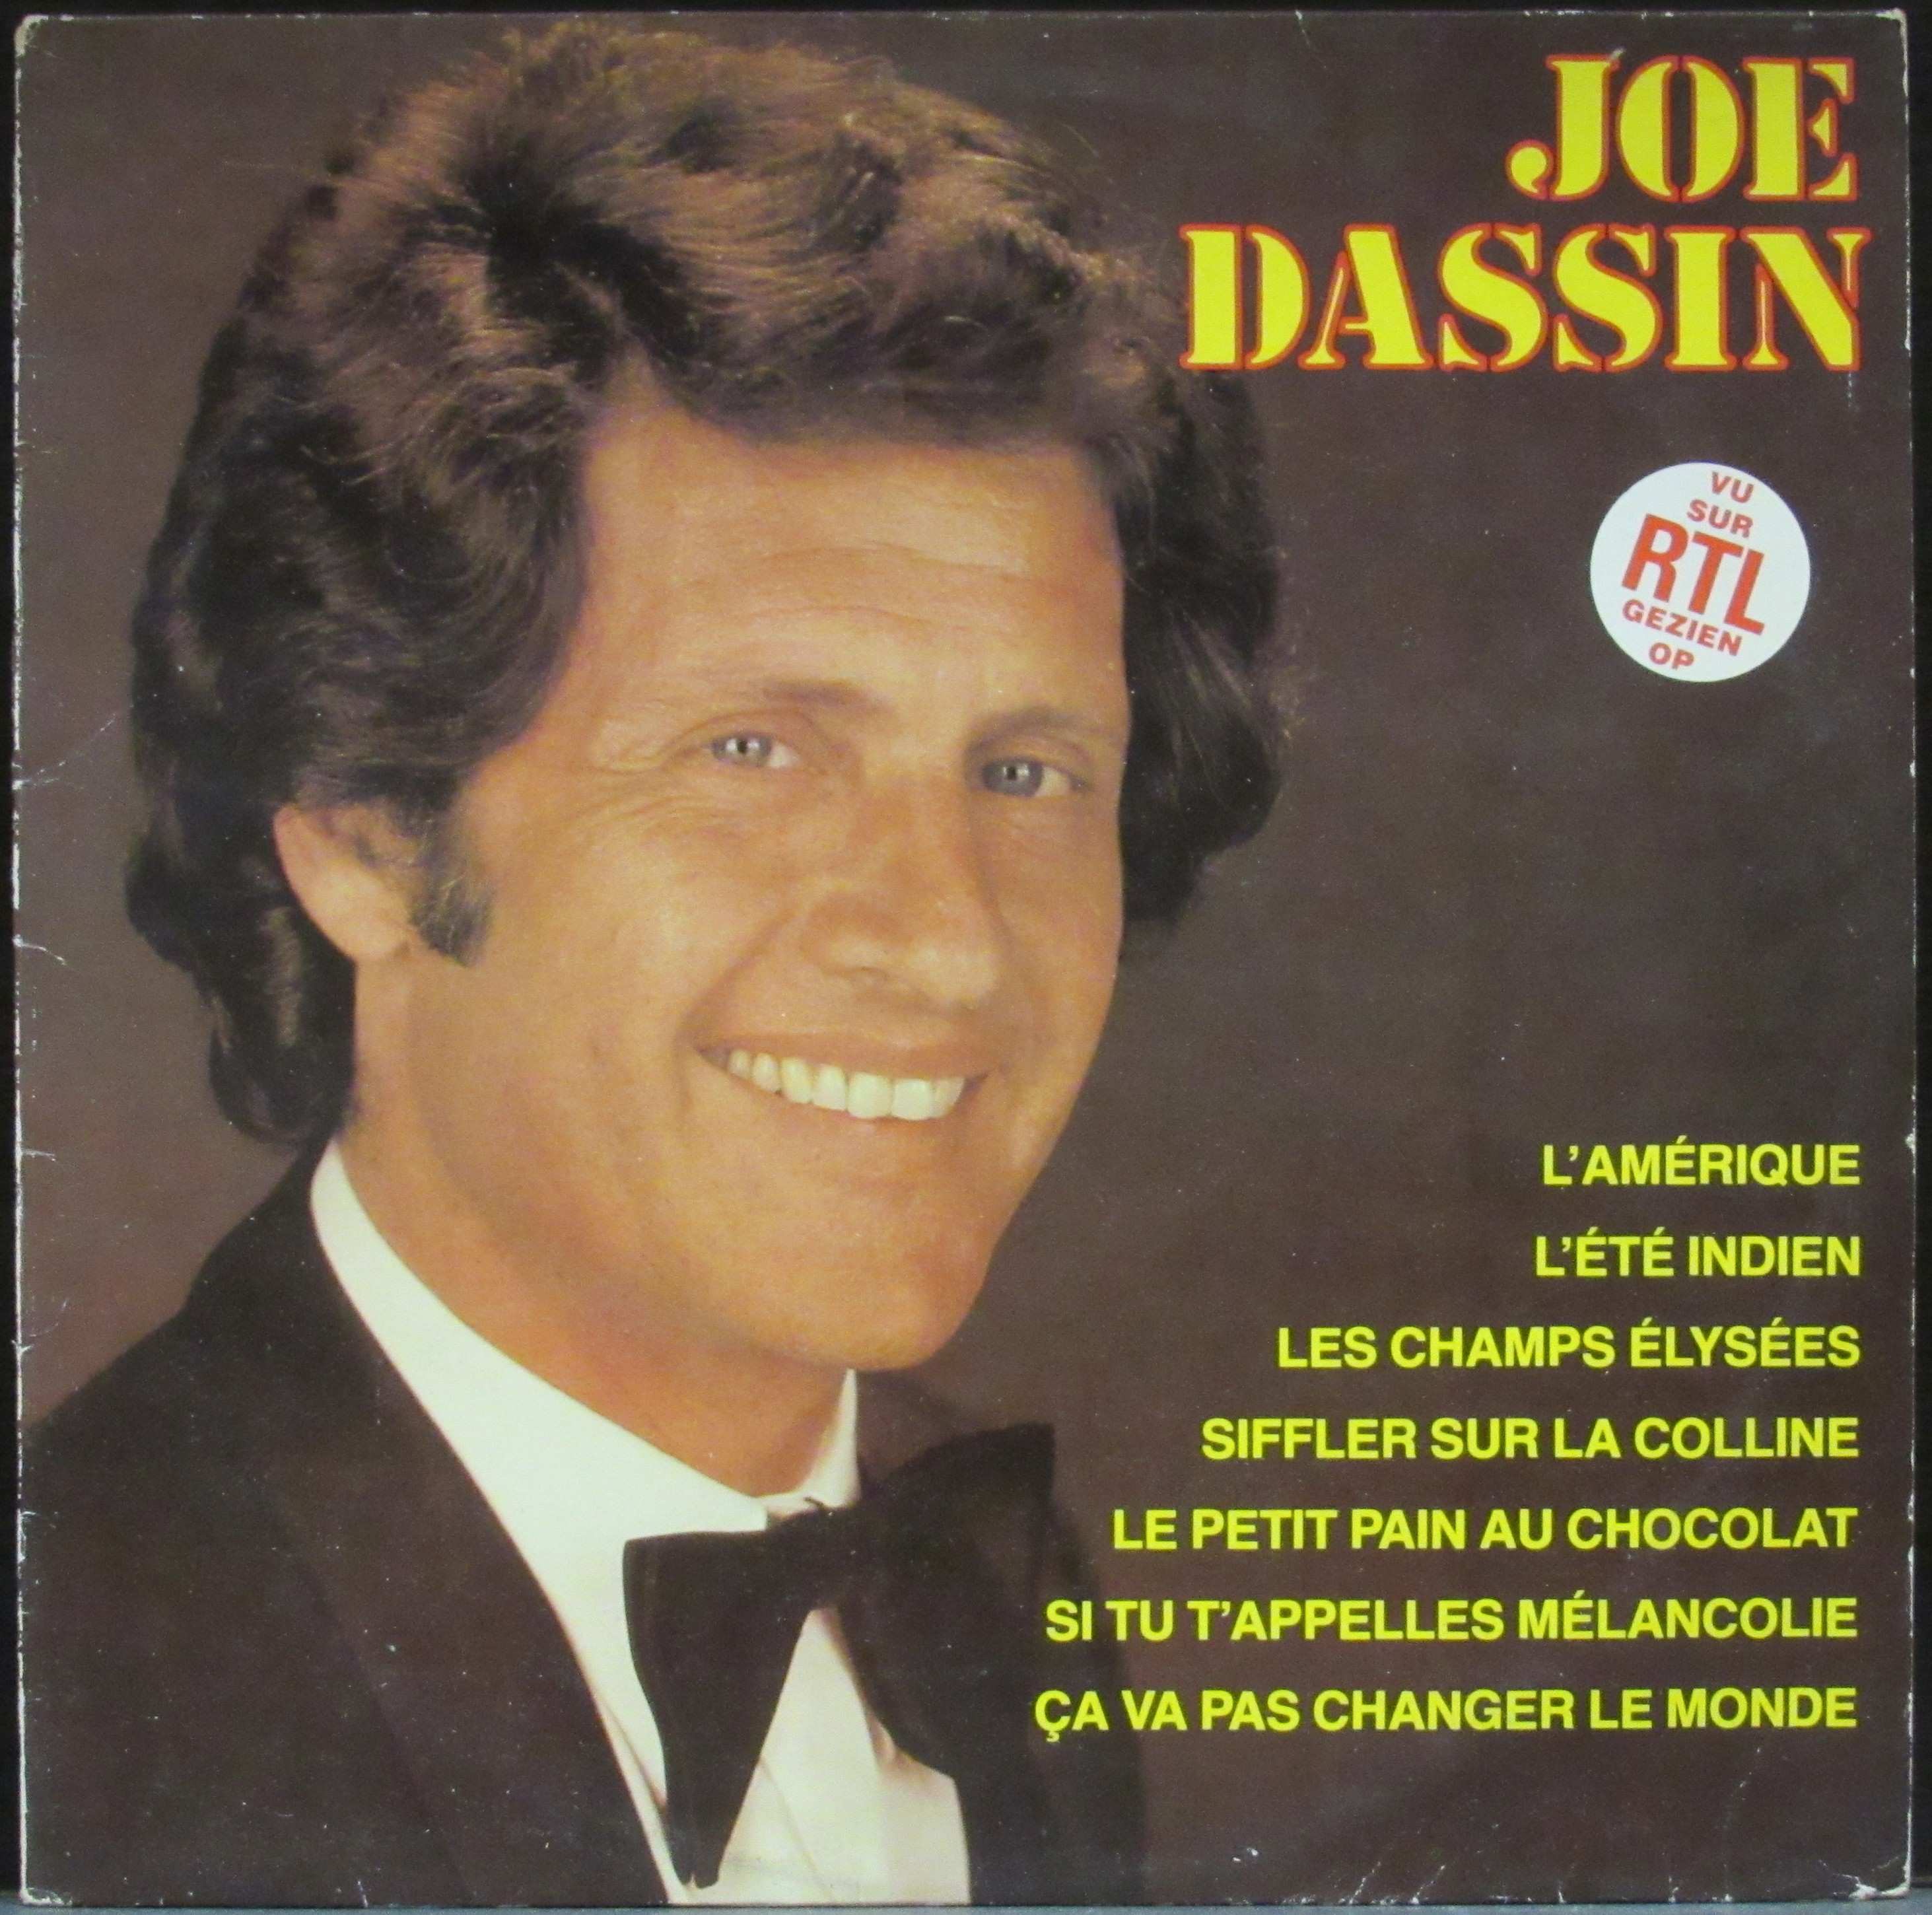 Дассен. Джо Дассен 1980. Joe Dassin фото. Joe Dassin 1968. Джо Дассен в Москве 1979.